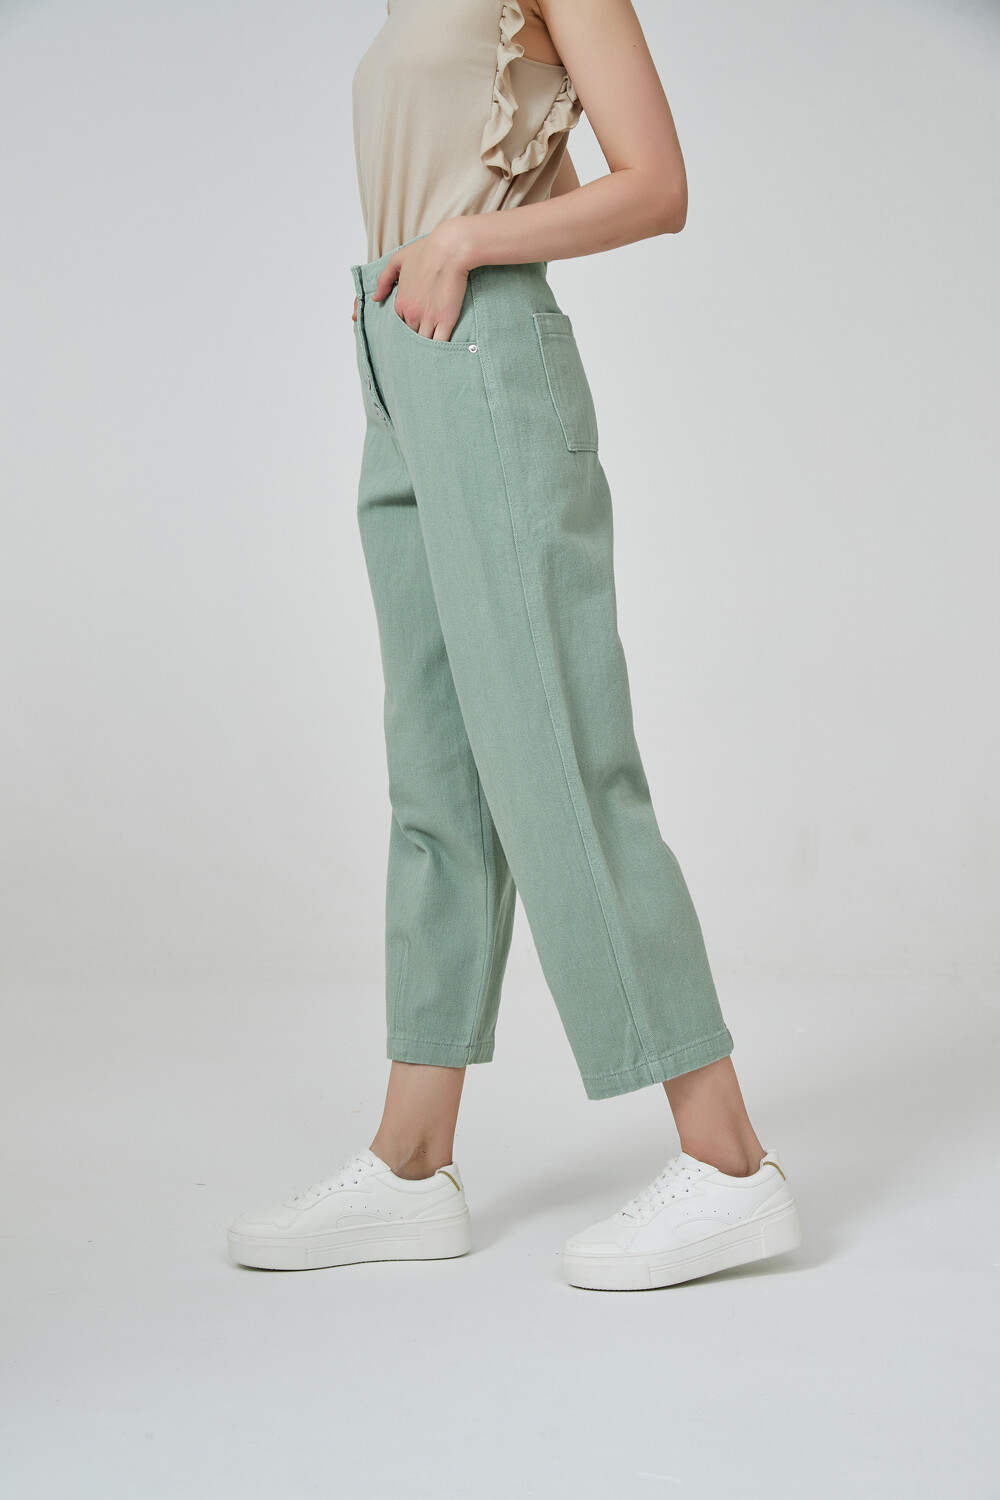 Pantalon Gobio Verde Seco